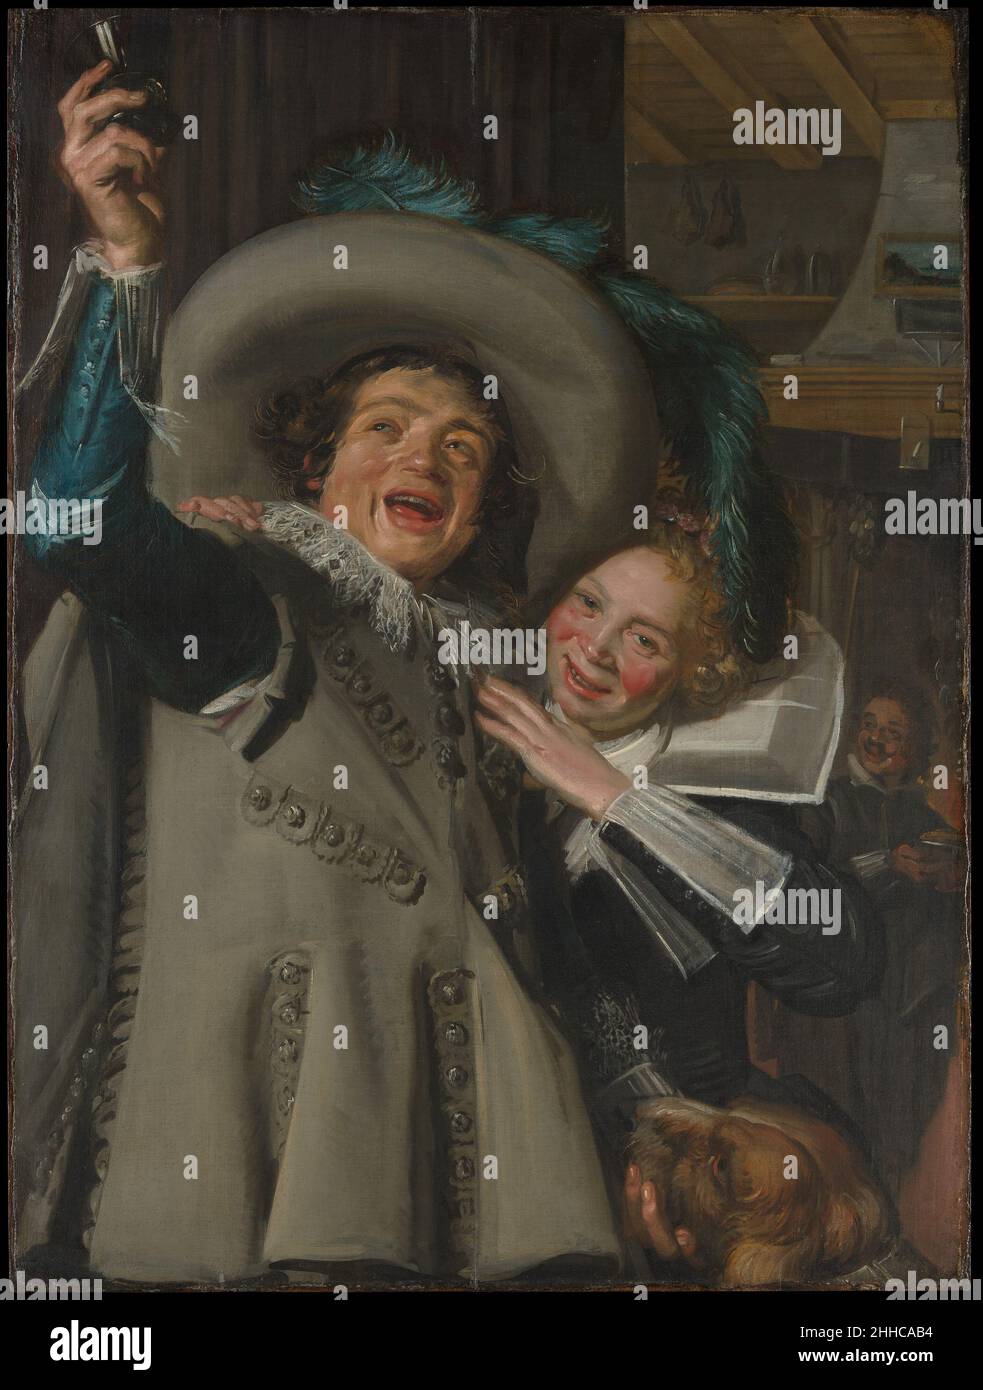 Young man and Woman in an Inn 1623 Frans Hals Dutch Dieses Bild, gemalt mit dem charakteristisch kühnen Pinselstrich, den Hals in der flämischen Malerei gelernt hatte, bietet eine glanzlose, nicht wertende Darstellung eines jungen Paares, das in der Tür eines Gasthauses oder Bordells streichelt. Gespülte Wangen und ein offenes Grinsen deuten darauf hin, dass das Paar gegen die zeitgenössischen Regeln der Komportierung verstoßen hat. Doch selbst das bescheidene Innere, in dem sie sich befinden, zeigt ein Landschaftsgemälde über dem Kaminsims. Hören Sie zu, wie Experten die Geschichte dieses Kunstwerks beleuchten Hörspiel oder Pause #5032. Junger Mann und Frau in einem Stockfoto